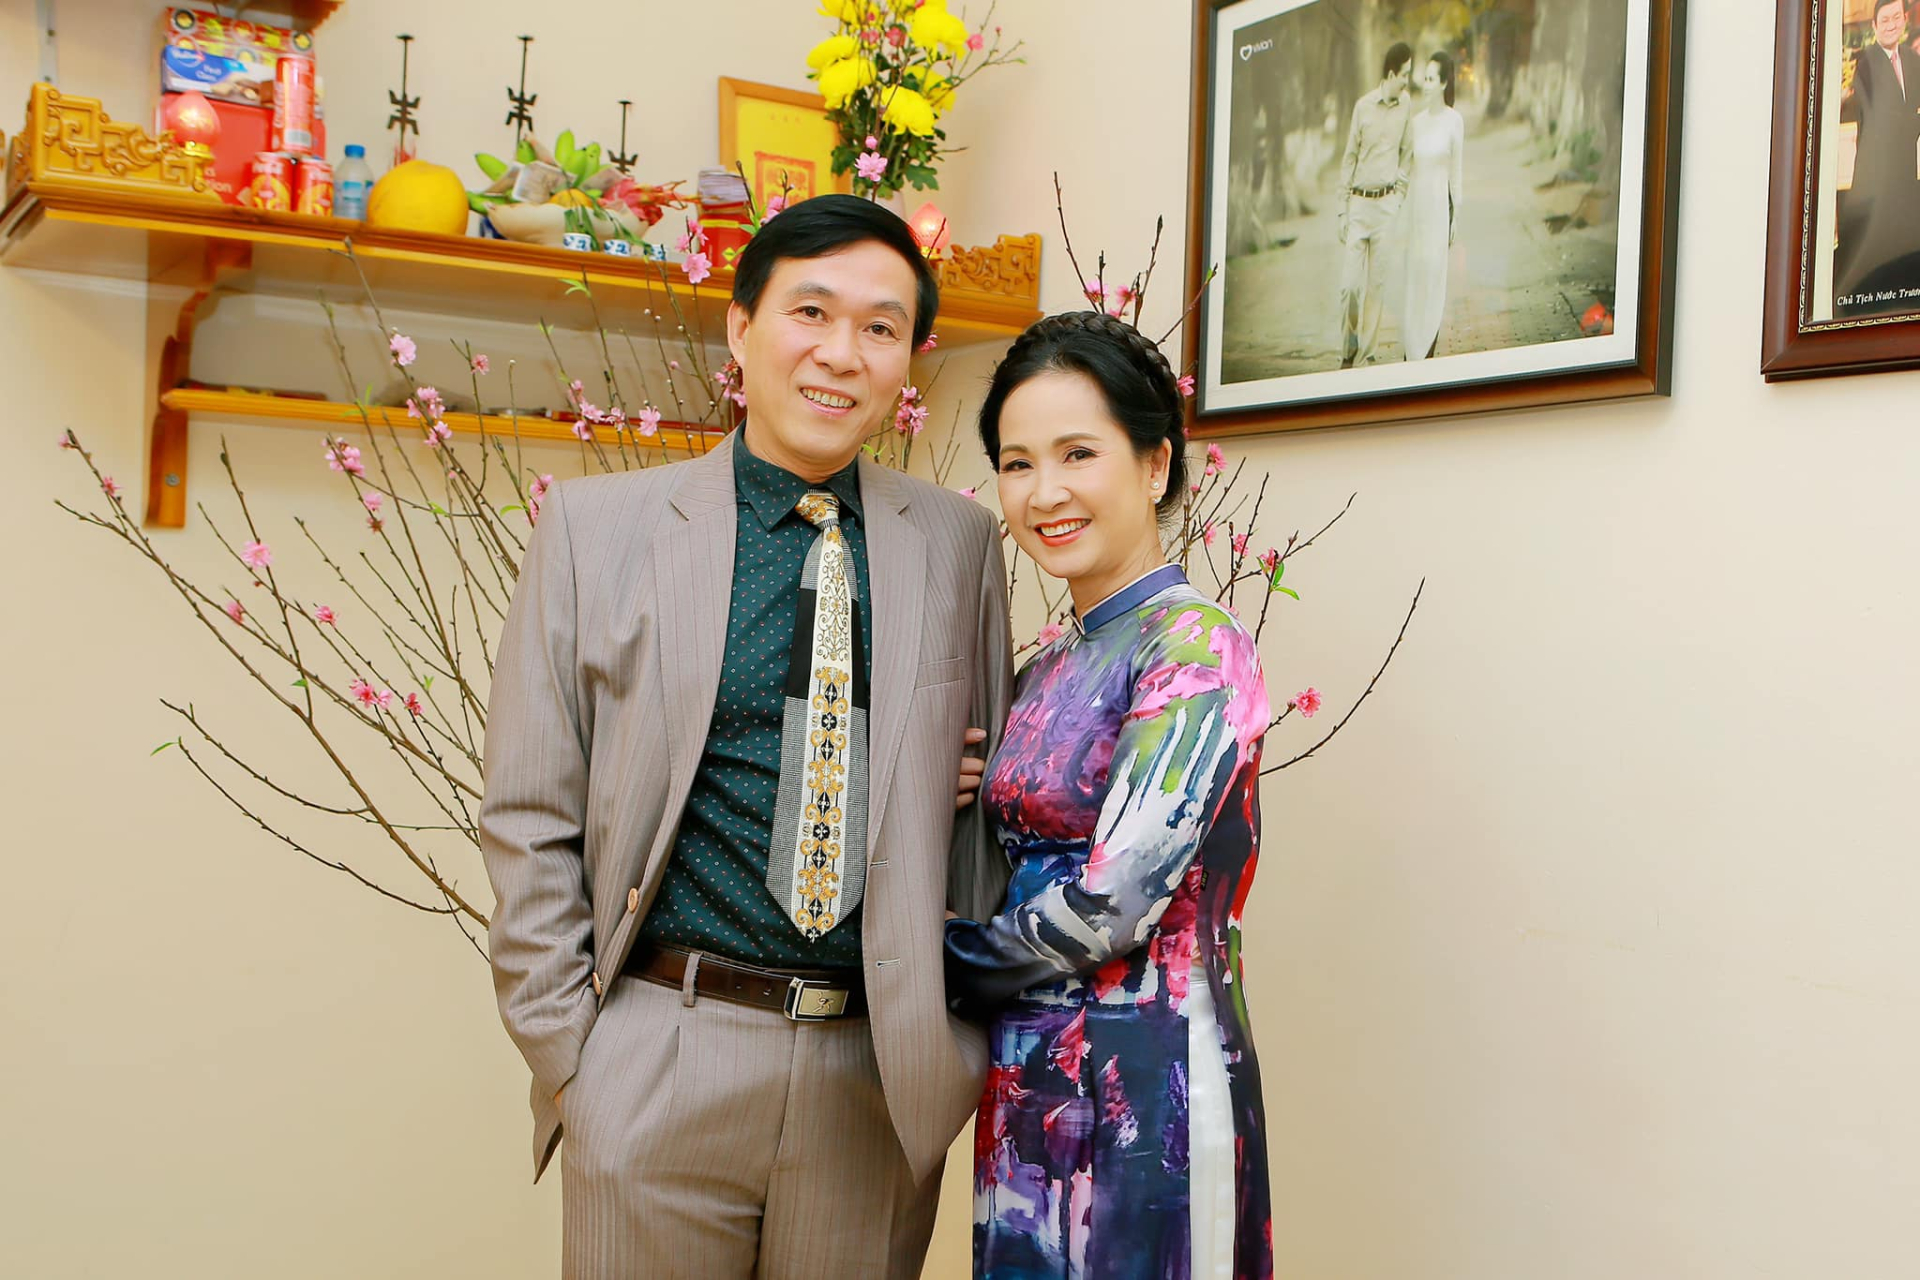 Hôn nhân hơn 30 năm của mẹ chồng bị ghét nhất màn ảnh Việt với NSUT Đỗ Kỷ, từng bị hỏi 'chia tay rồi à?' - ảnh 1